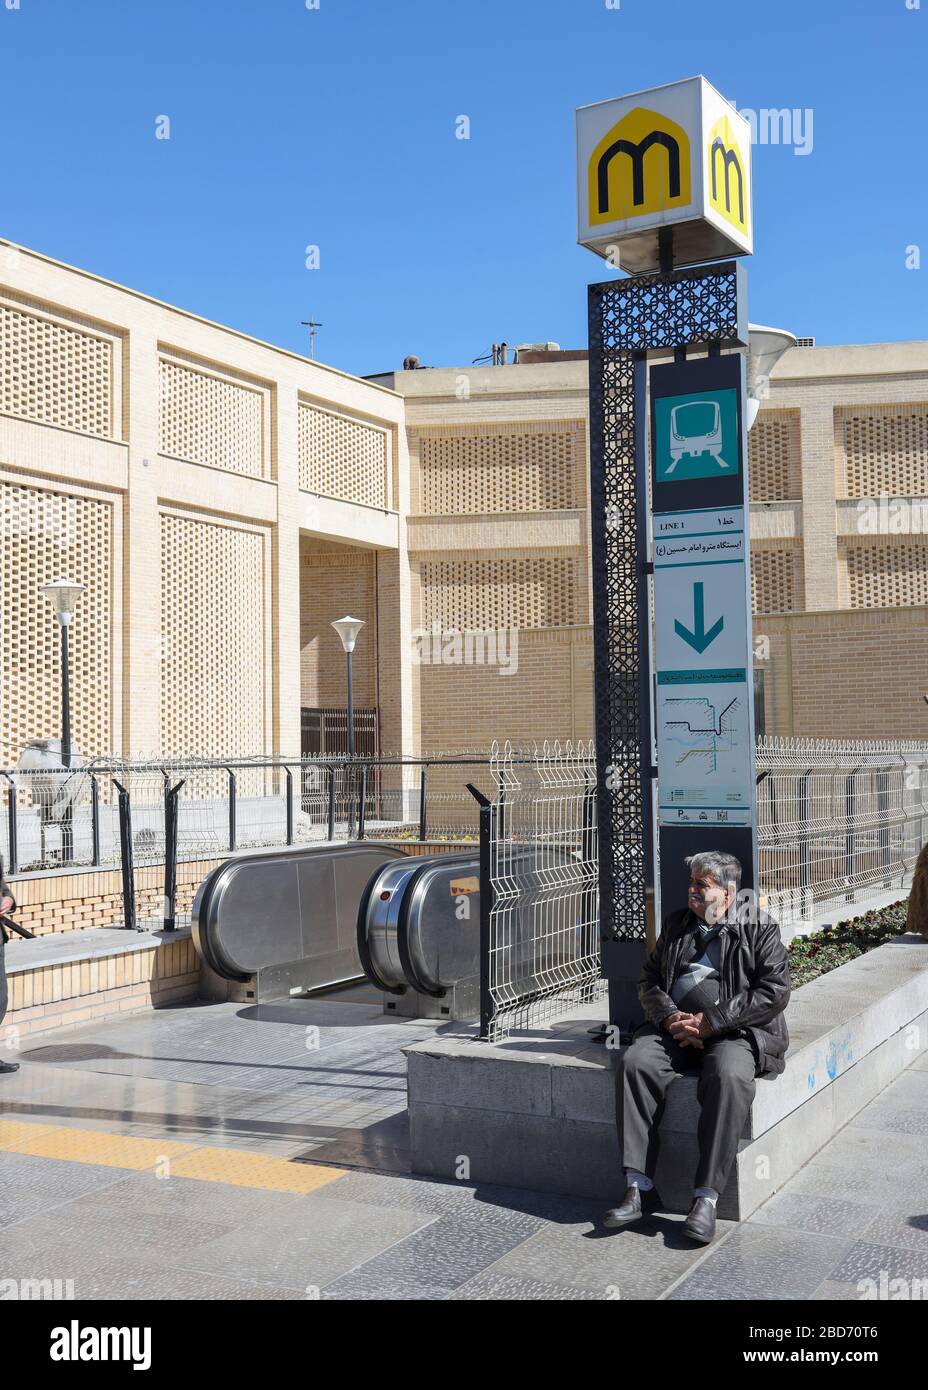 Entrée à Imam Hossein, Imam Hussein, station de métro Emam Hosein à Isfahan, province d'Esfahan, Iran, Perse, Moyen-Orient Banque D'Images